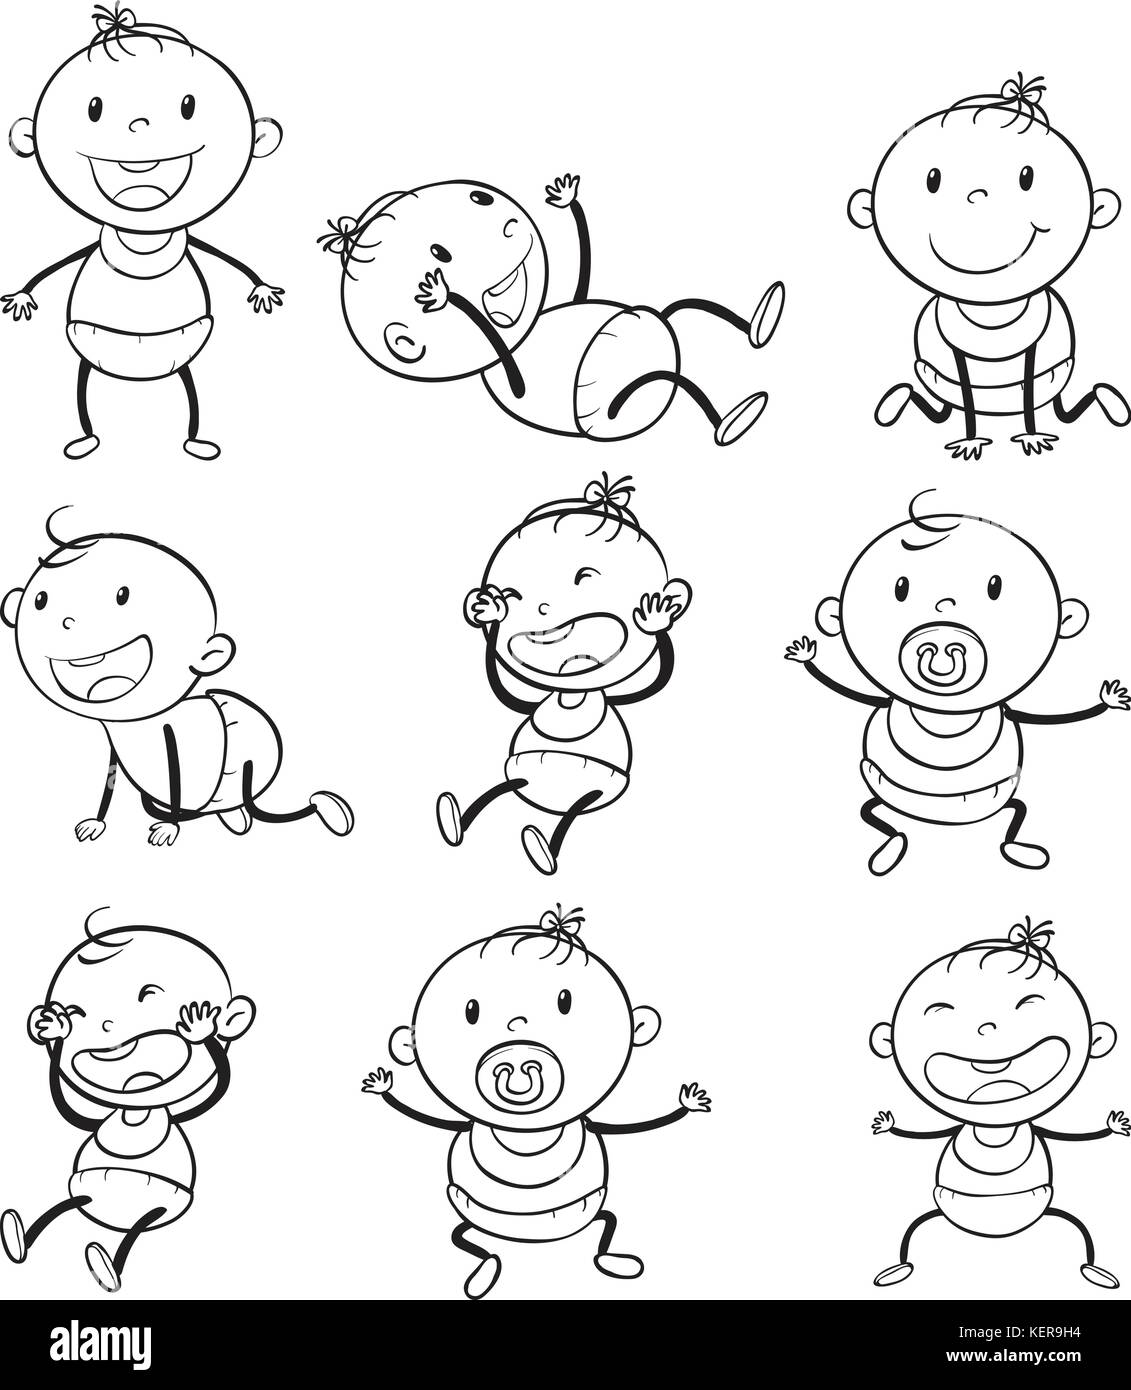 Ilustración de los bebés con diferentes estados de ánimo en un fondo blanco. Ilustración del Vector